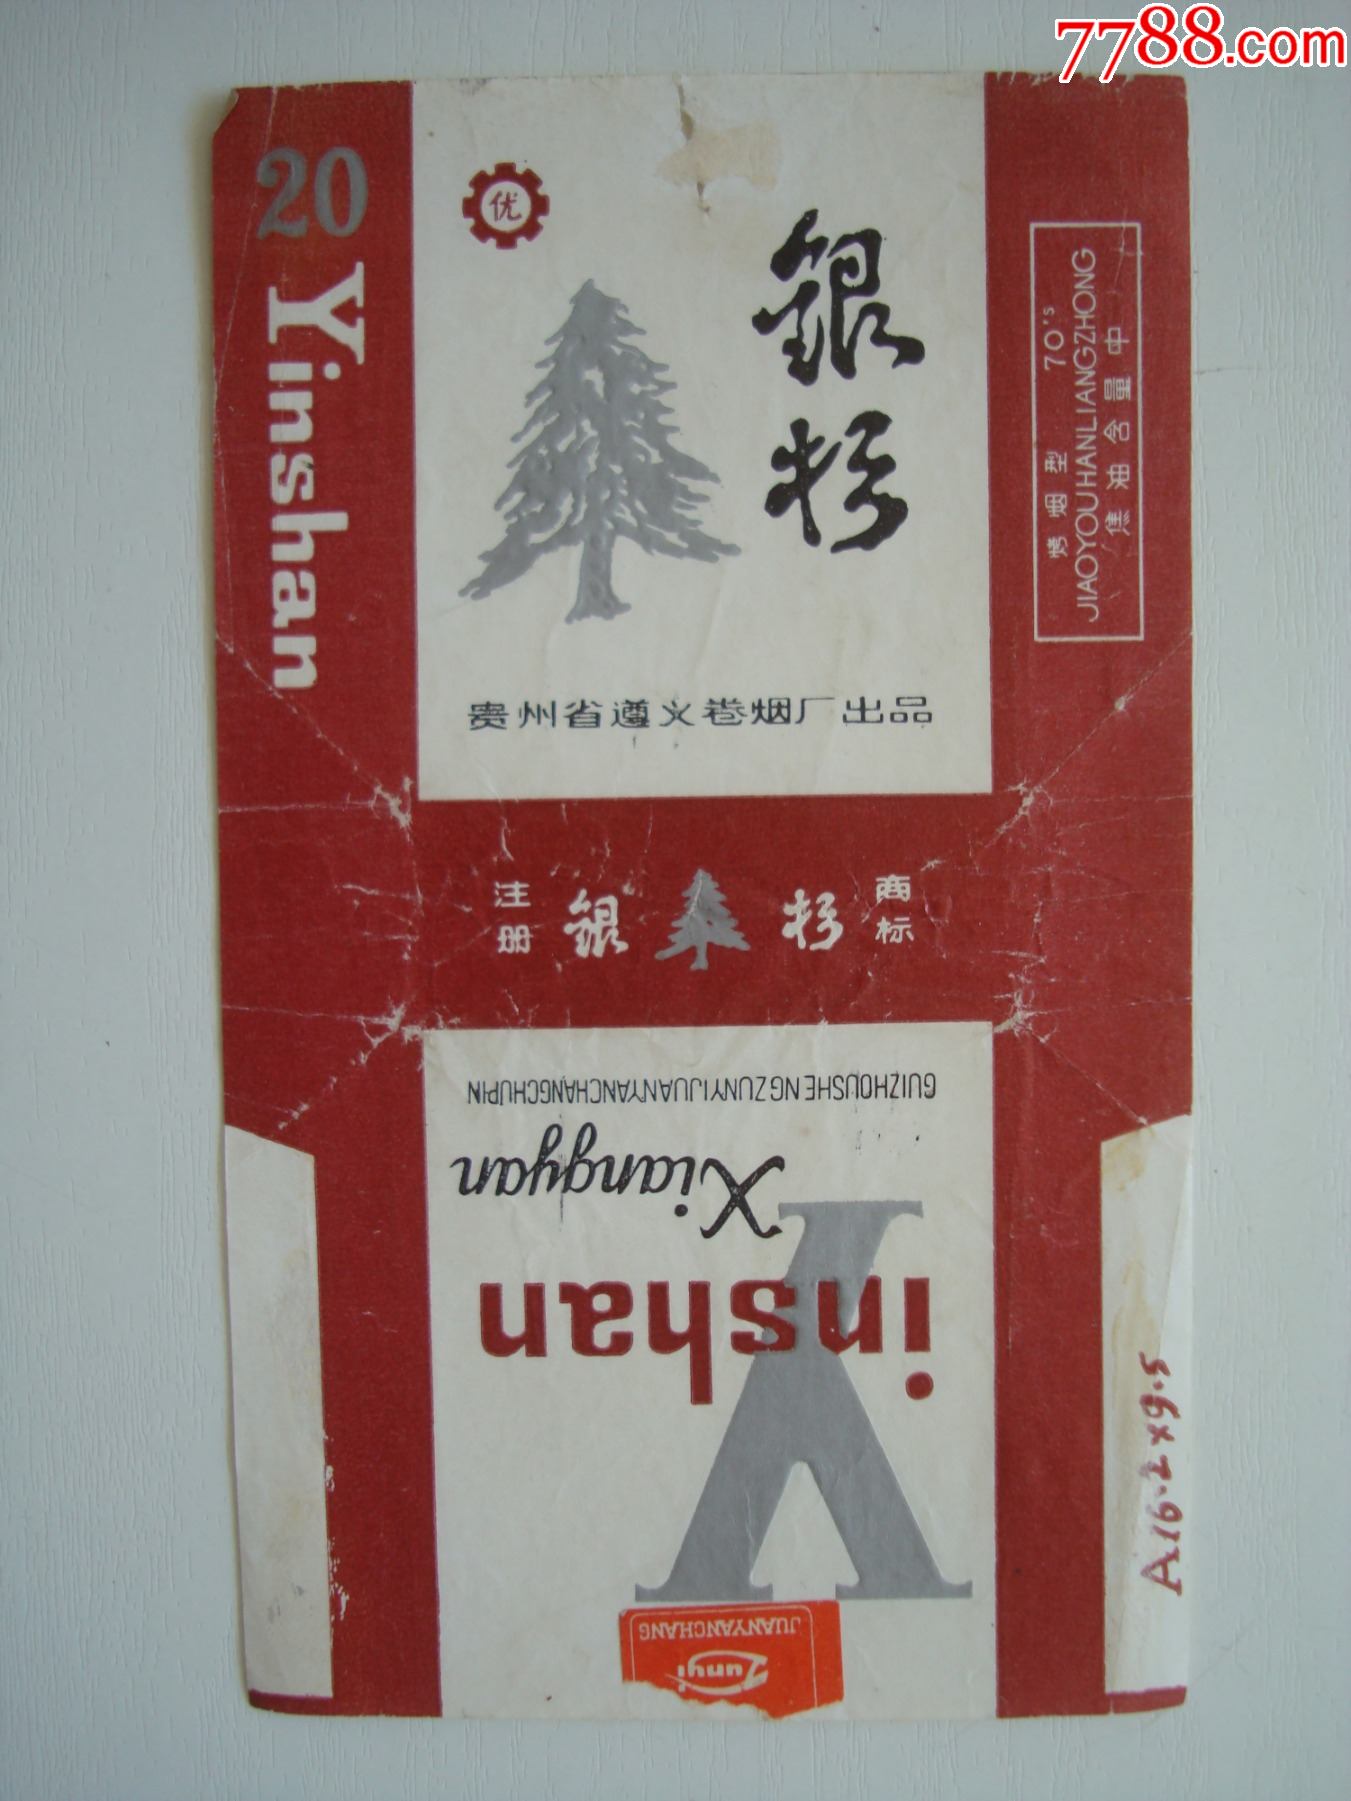 银杉――贵阳省遵义卷烟出品――70s标含焦标